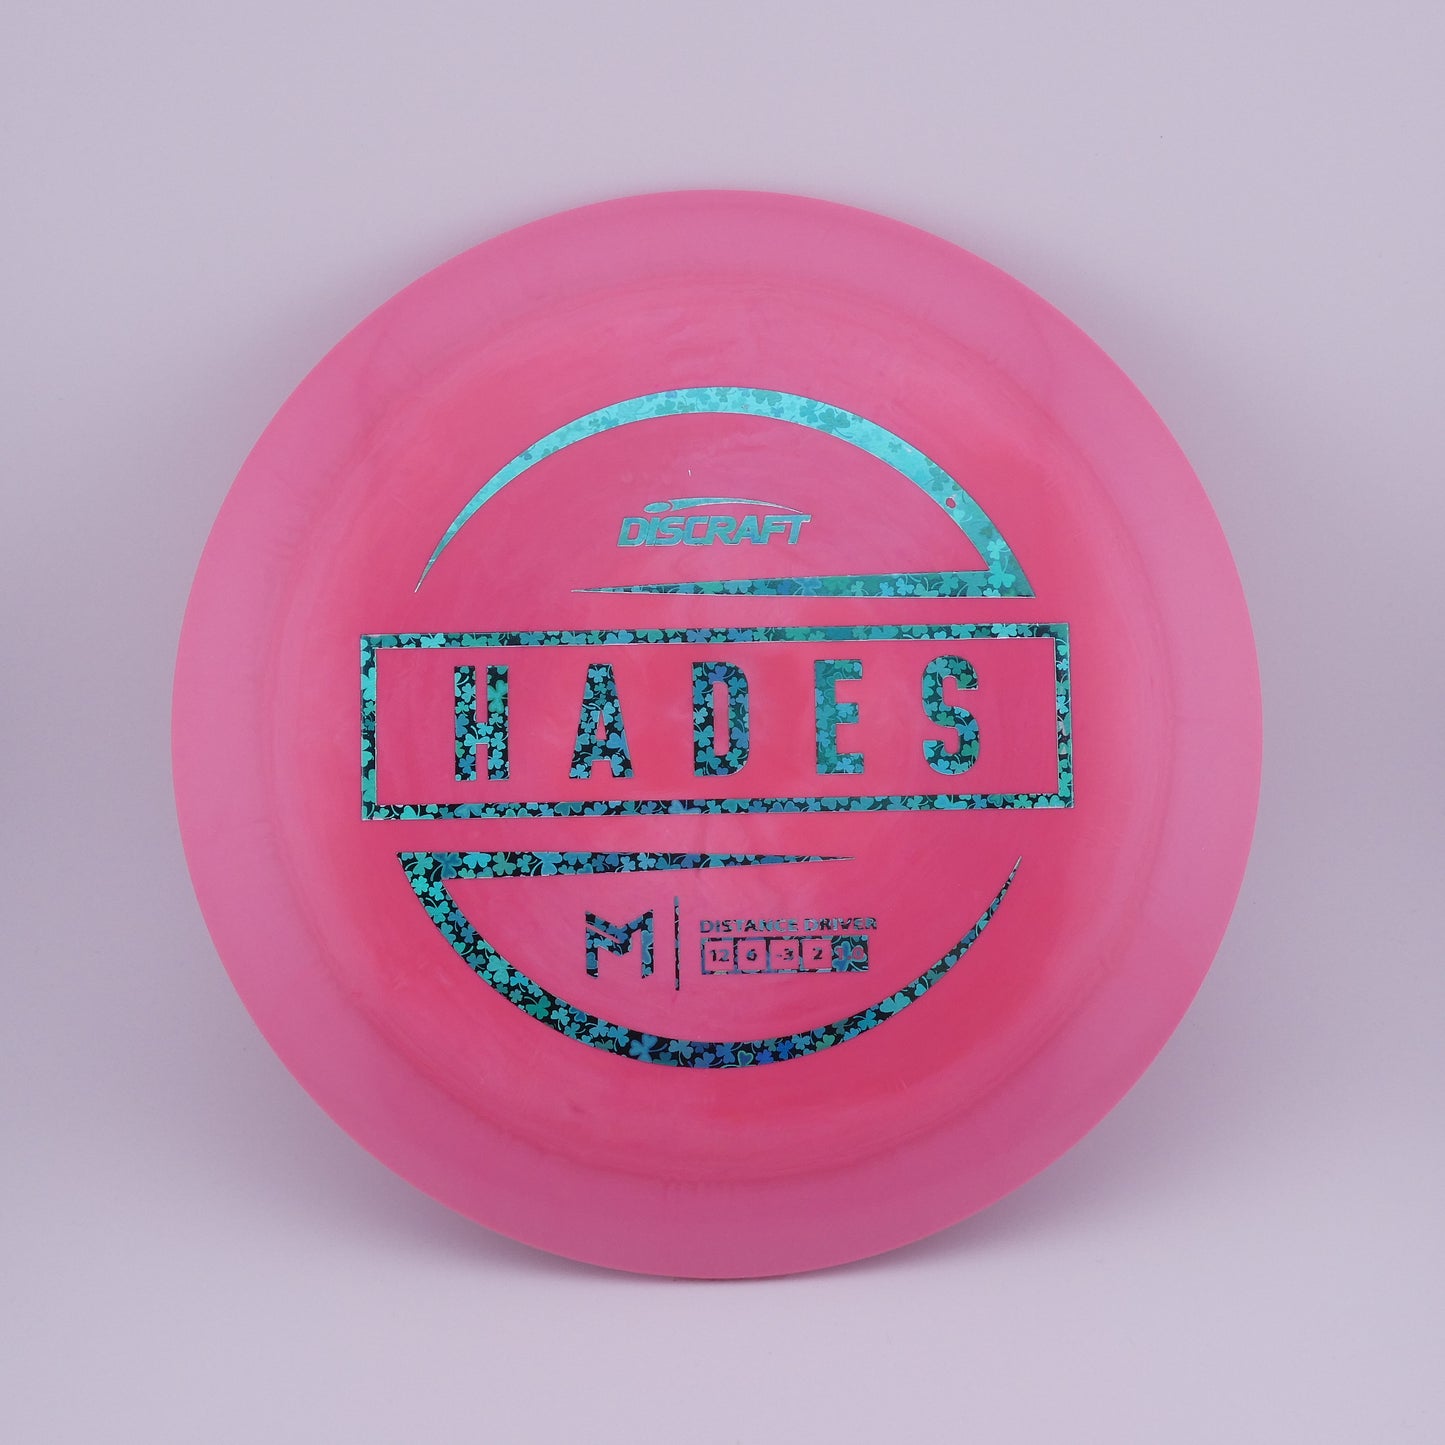 ESP Hades 173-174g